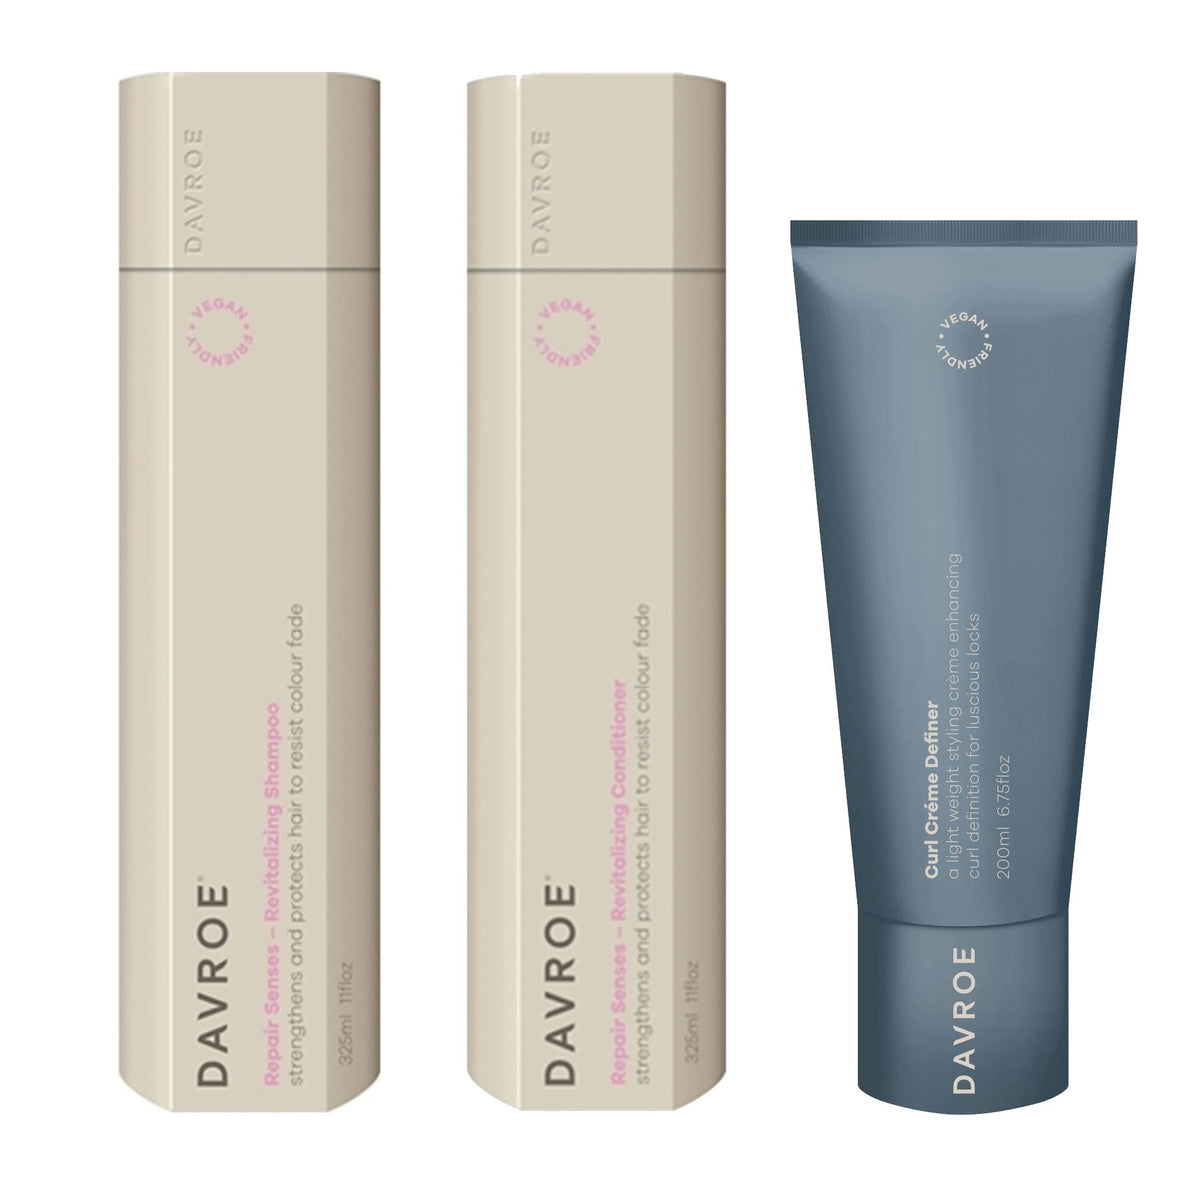 Davroe Repair Senses Revitalizing Shampoo, Conditioner and Curl Crème Definer Trio - Haircare Superstore